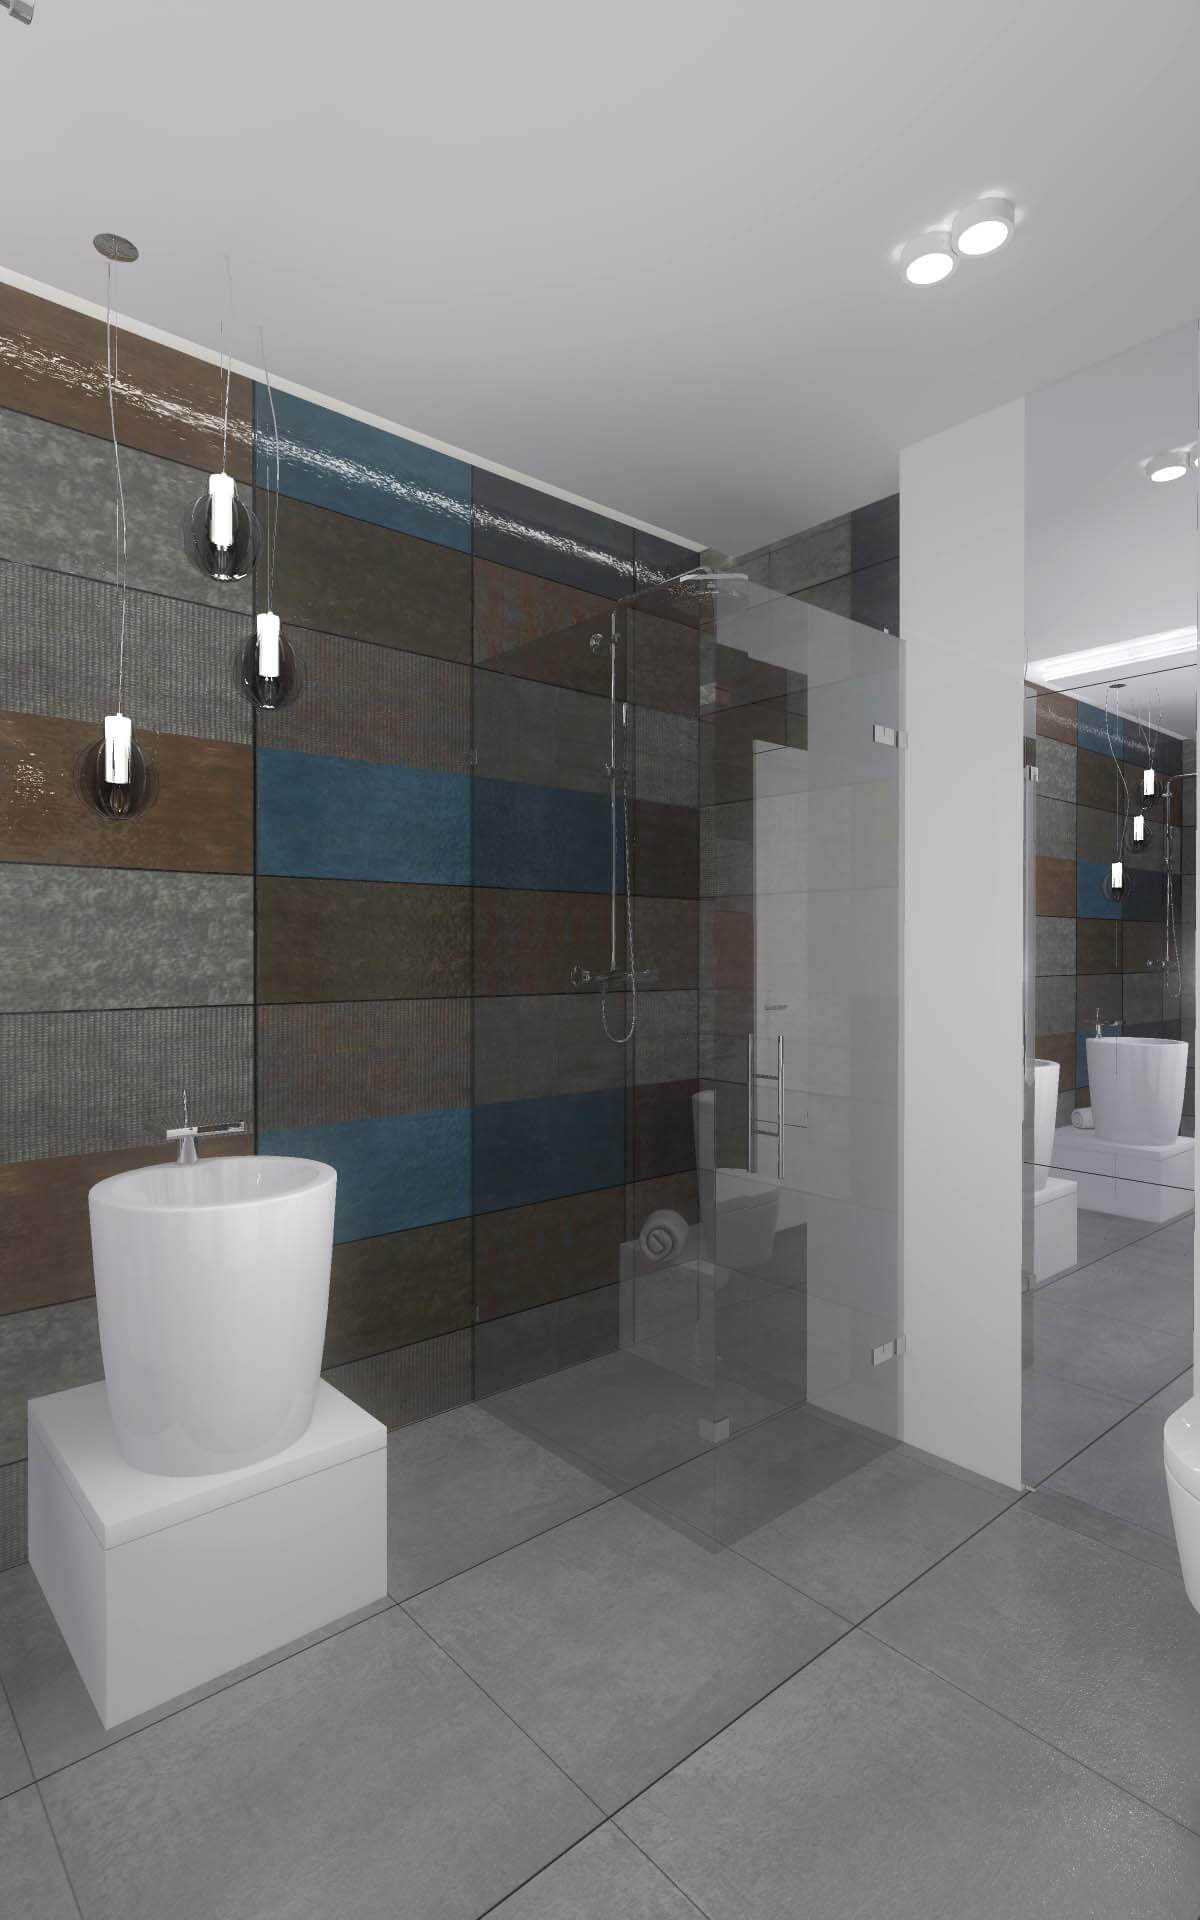 Designerska ściana w odcieniach pasujących do przestrzeni nowoczesnej łazienki - Mobiliani.